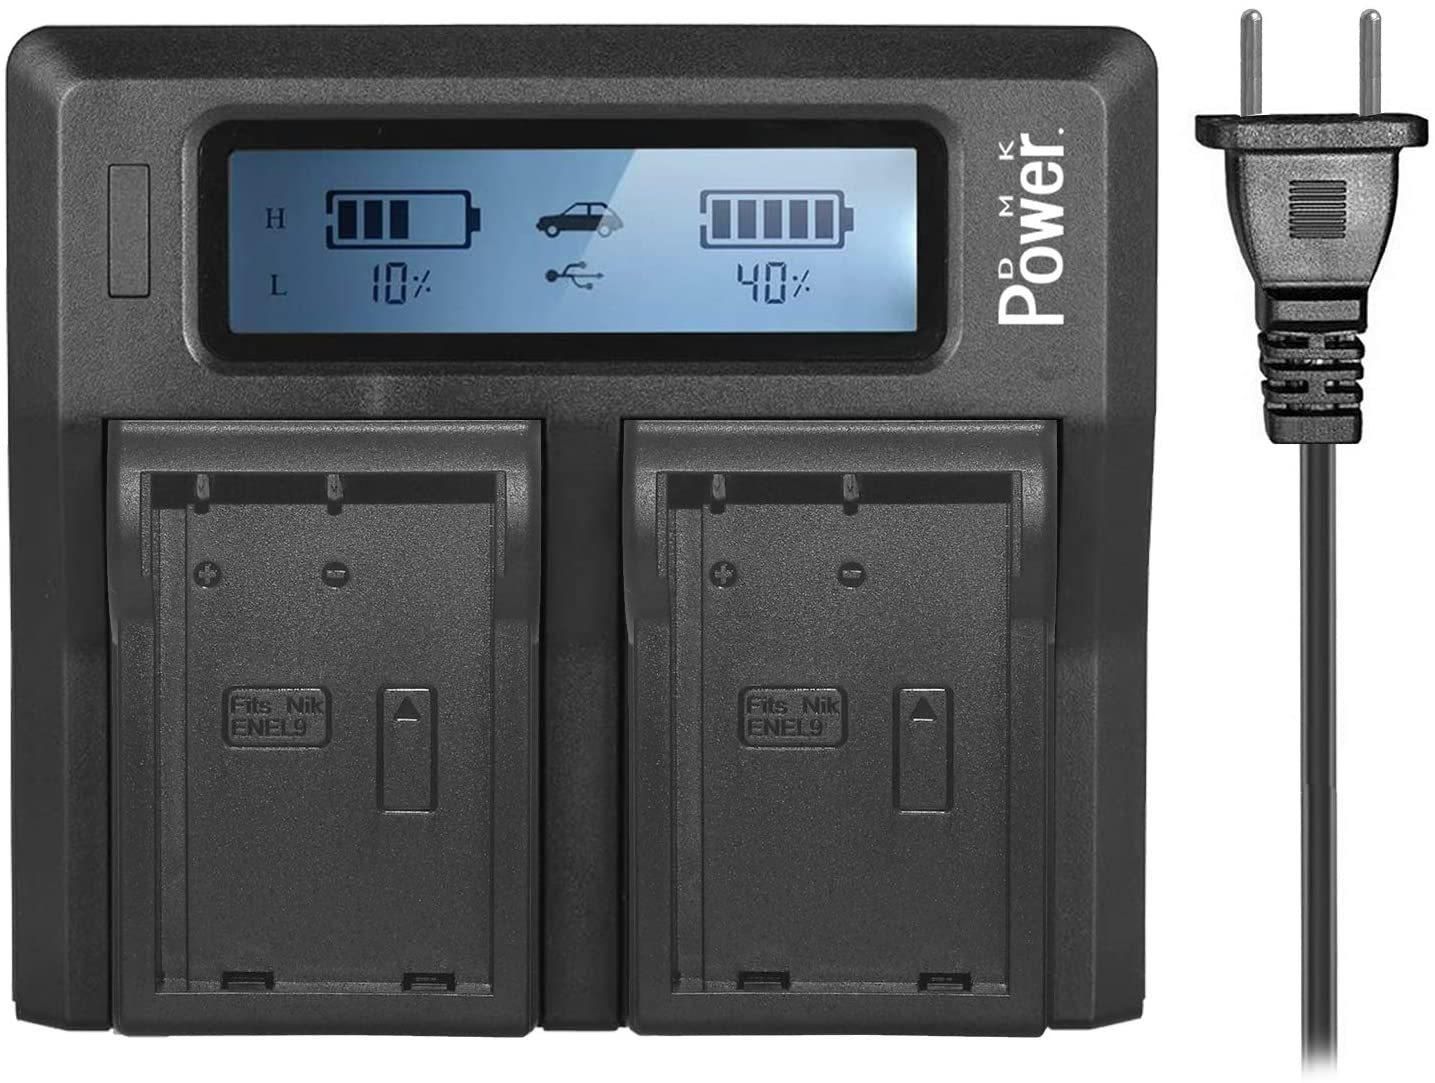 DMK Power EN-EL9, EN-EL9A DC-01 LCD Dual Digital Battery Charger for Nikon D5000, D3000, D60, D40X, D40 Digital SLR Camera